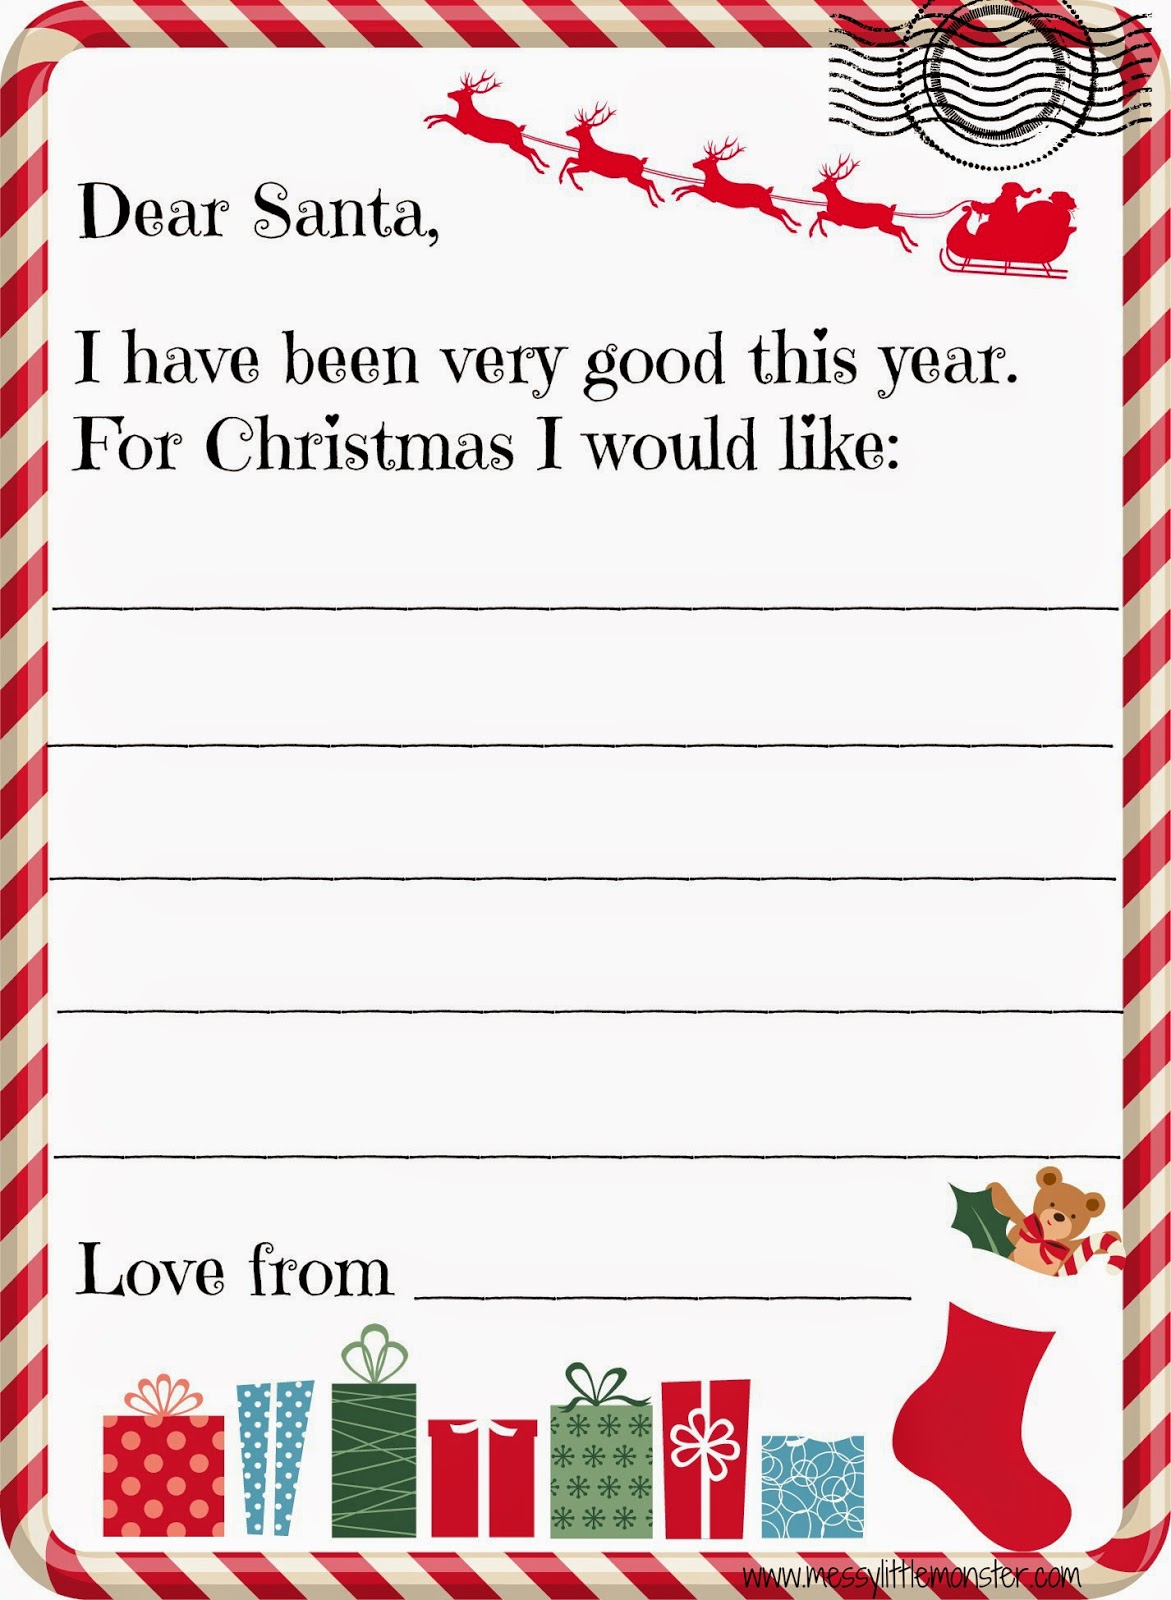 printable-santa-letter-for-kids-messy-little-monster